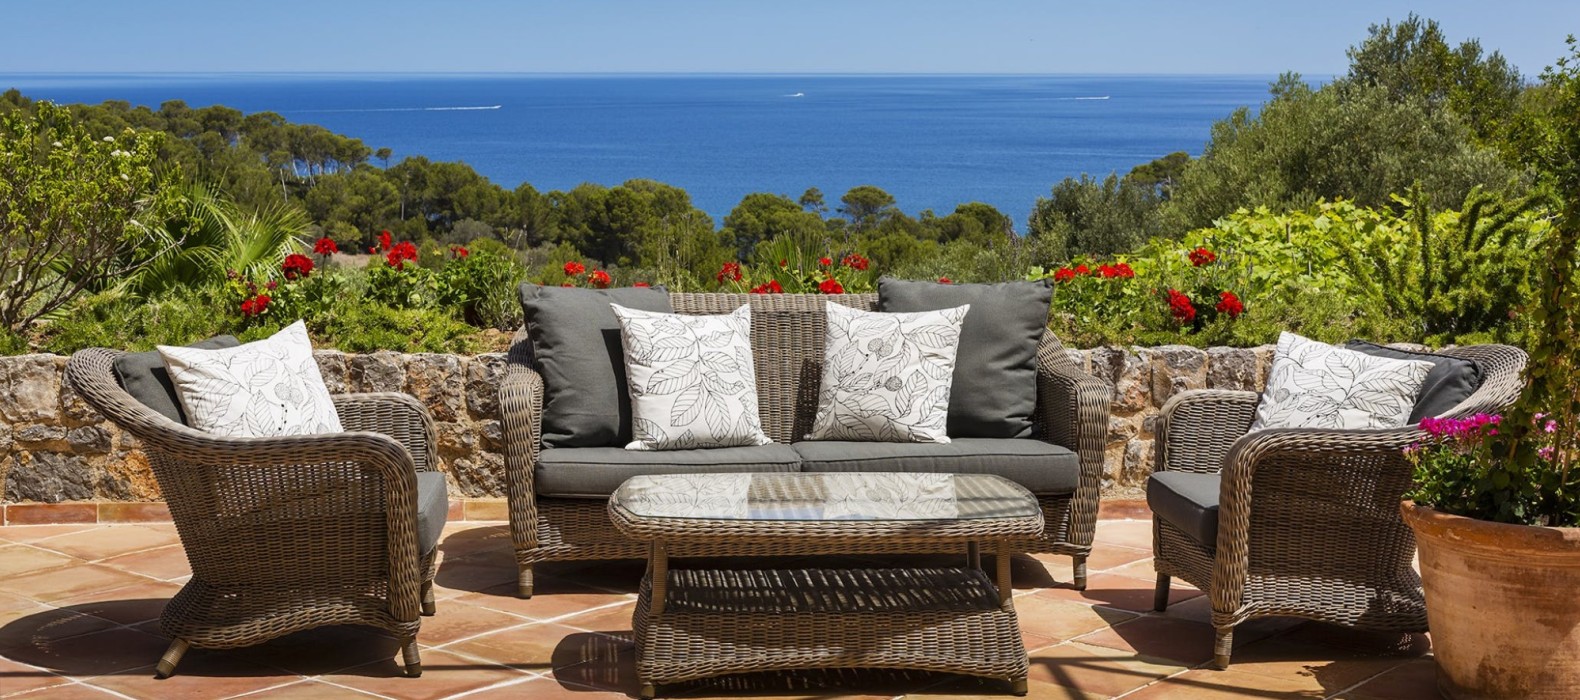 Exterior chill area of Villa Can Jungle in Mallorca